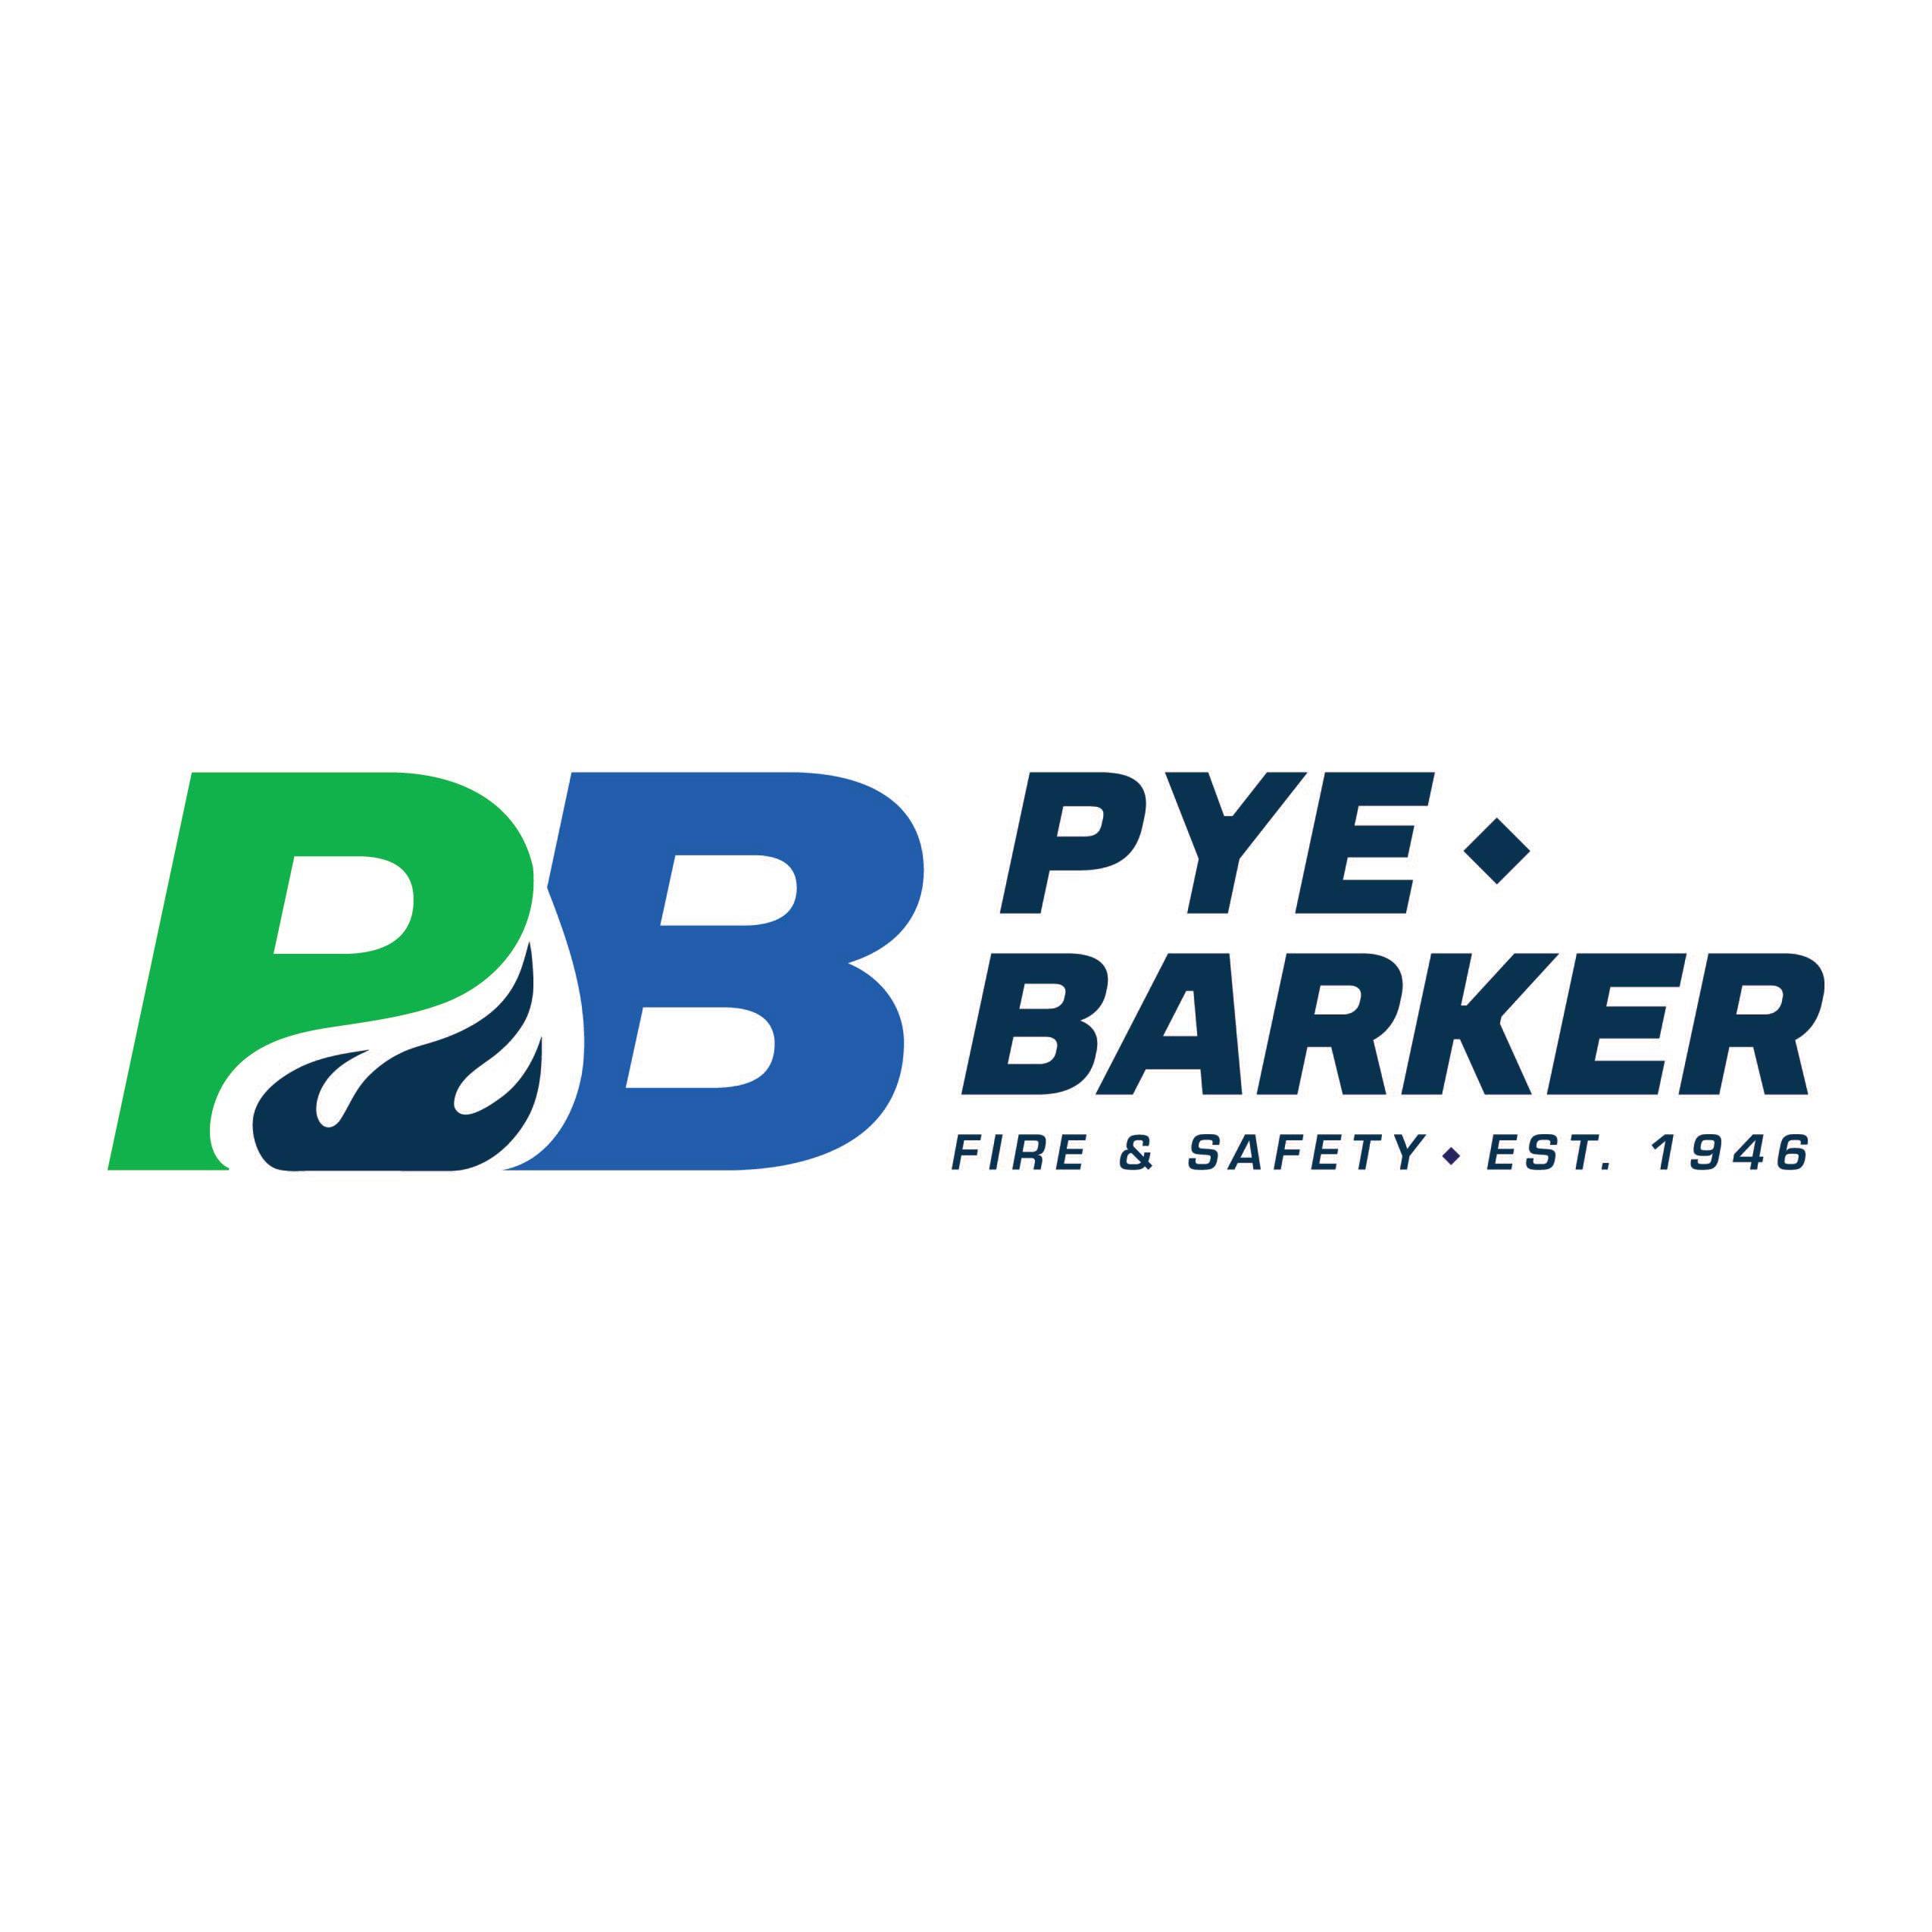 Pye-Barker Fire & Safety - Miami, FL 33142 - (305)634-5524 | ShowMeLocal.com